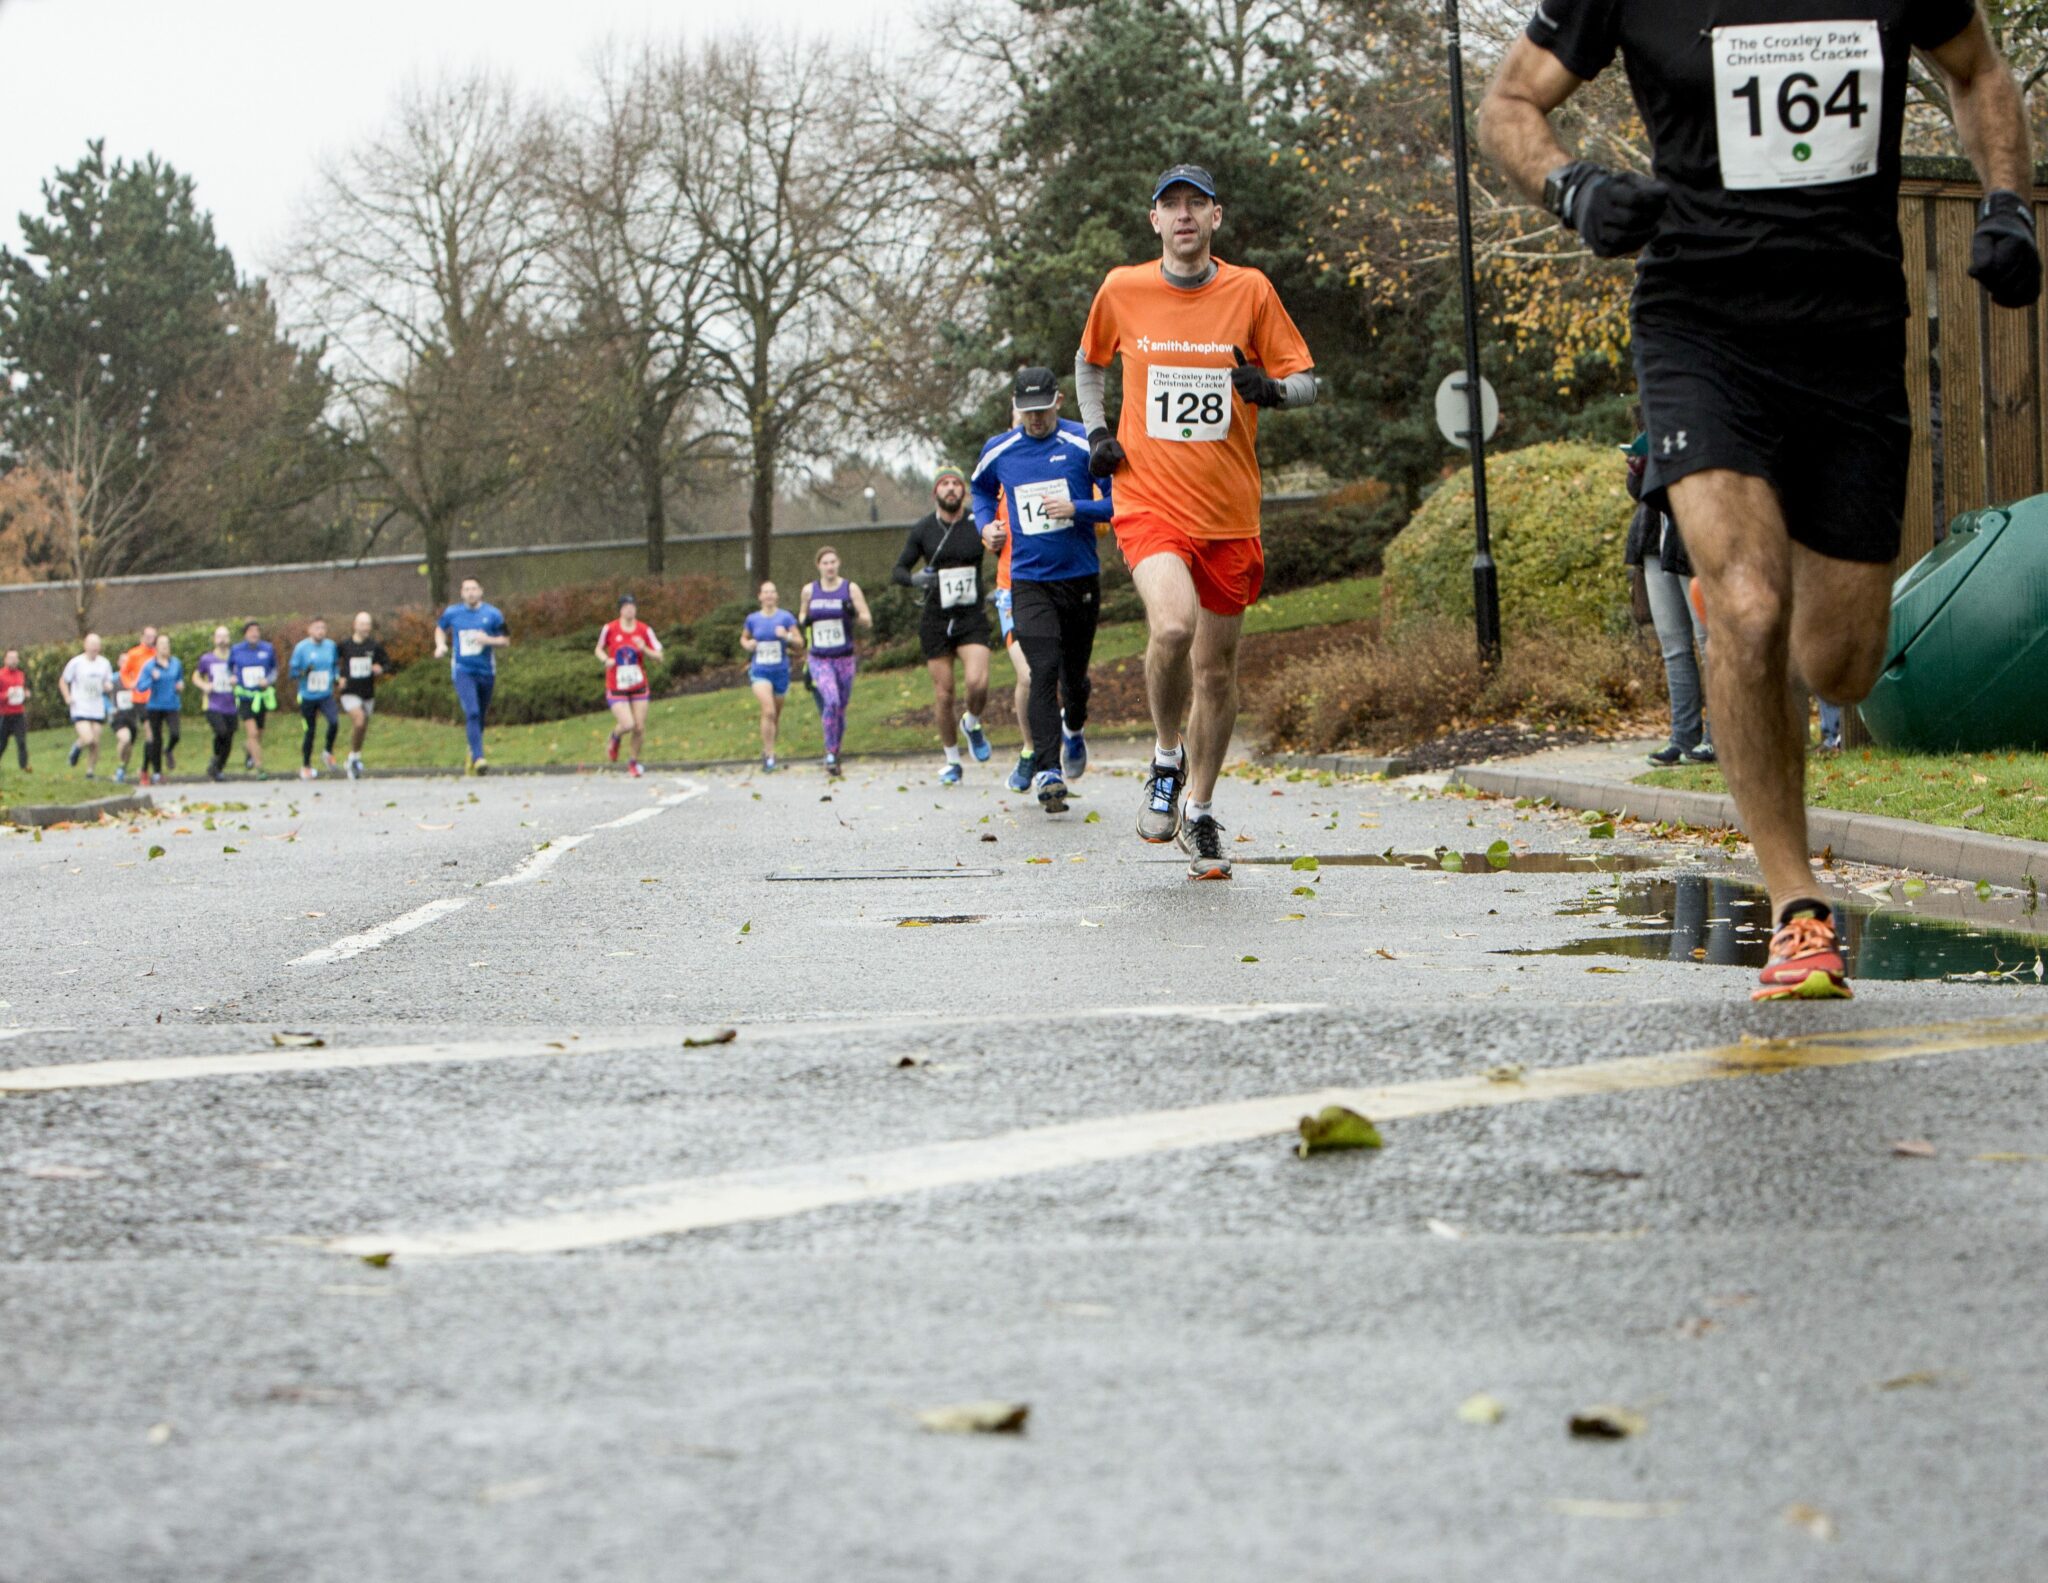 Croxley Park 10K Run | Runners